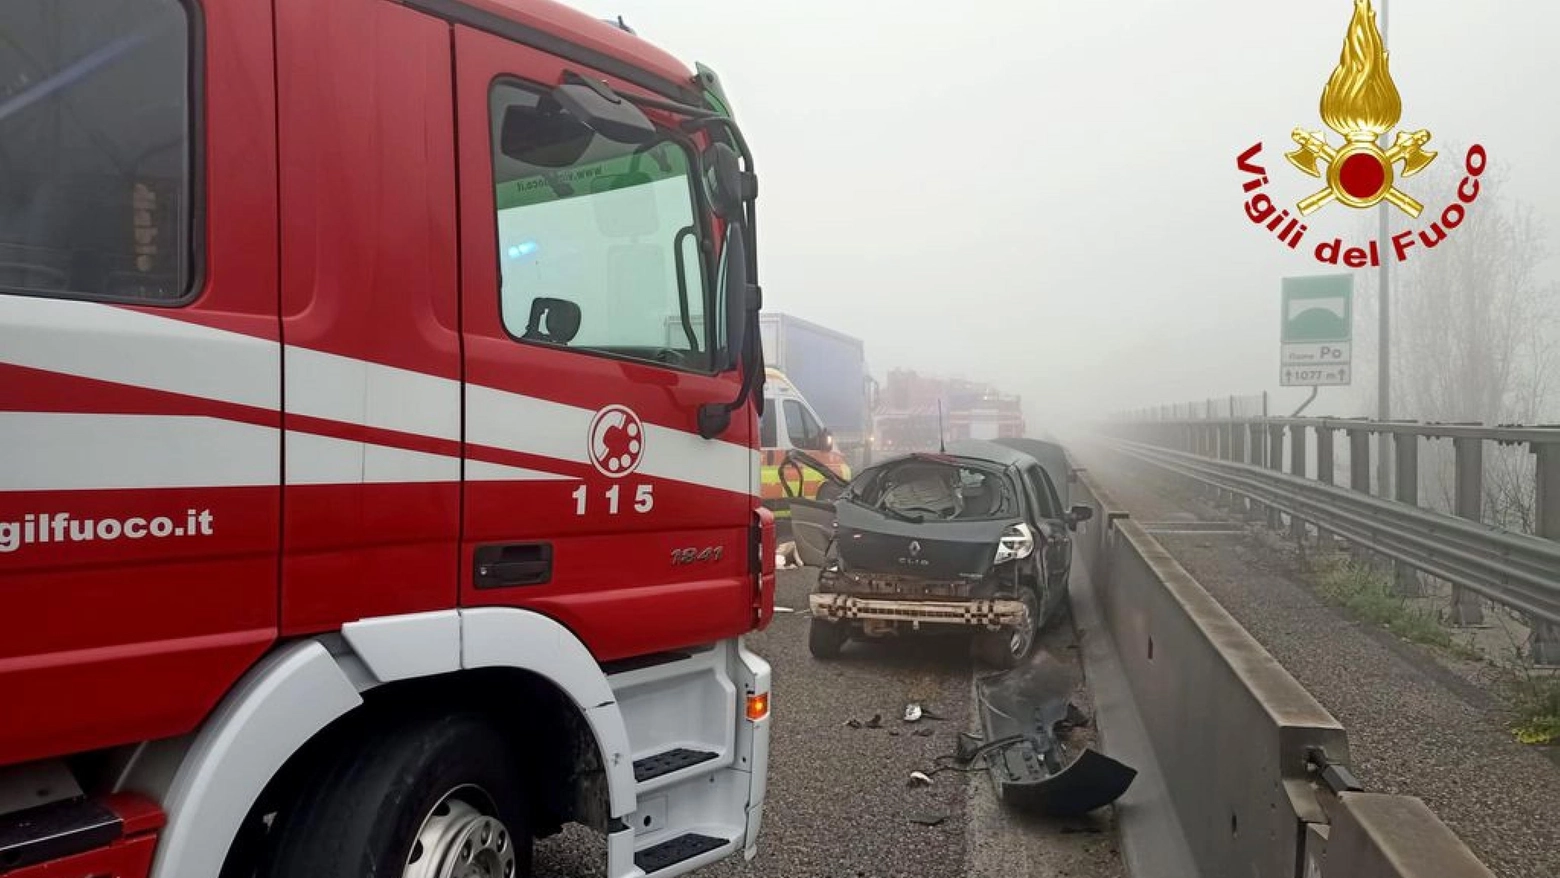 L'intervento dei Vigili del fuoco sul luogo dell'incidente in A1 a Piacenza, che ha causato due morti e sei feriti